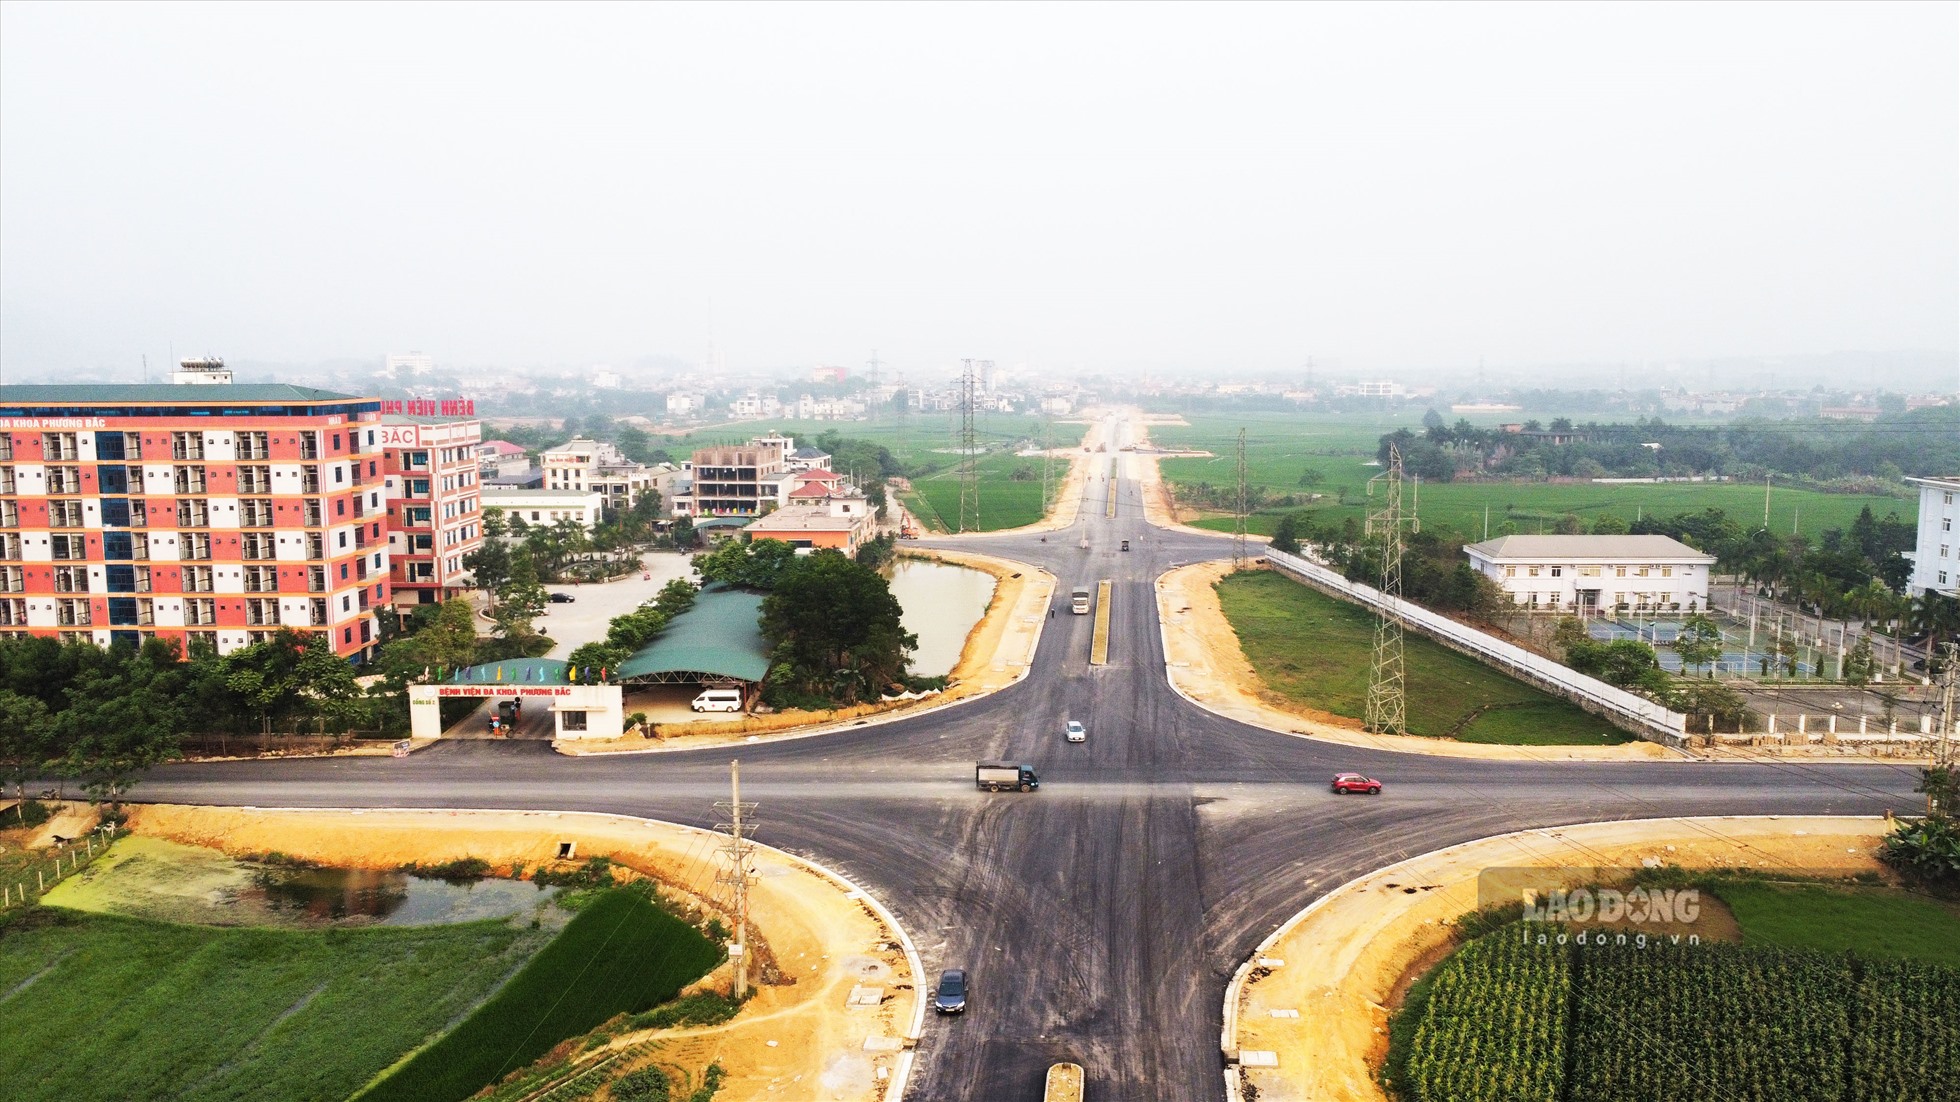 Dự án đường trục phát triển đô thị từ thành phố Tuyên Quang đi trung tâm huyện Yên Sơn với tổng chiều dài hơn 10 km cũng đang gấp rút hoàn thiện. Đây là một công trình giao thông quan trọng từng bước hoàn thiện hệ thống giao thông đồng bộ theo quy hoạch mạng lưới giao thông tỉnh Tuyên Quang đến năm 2030.